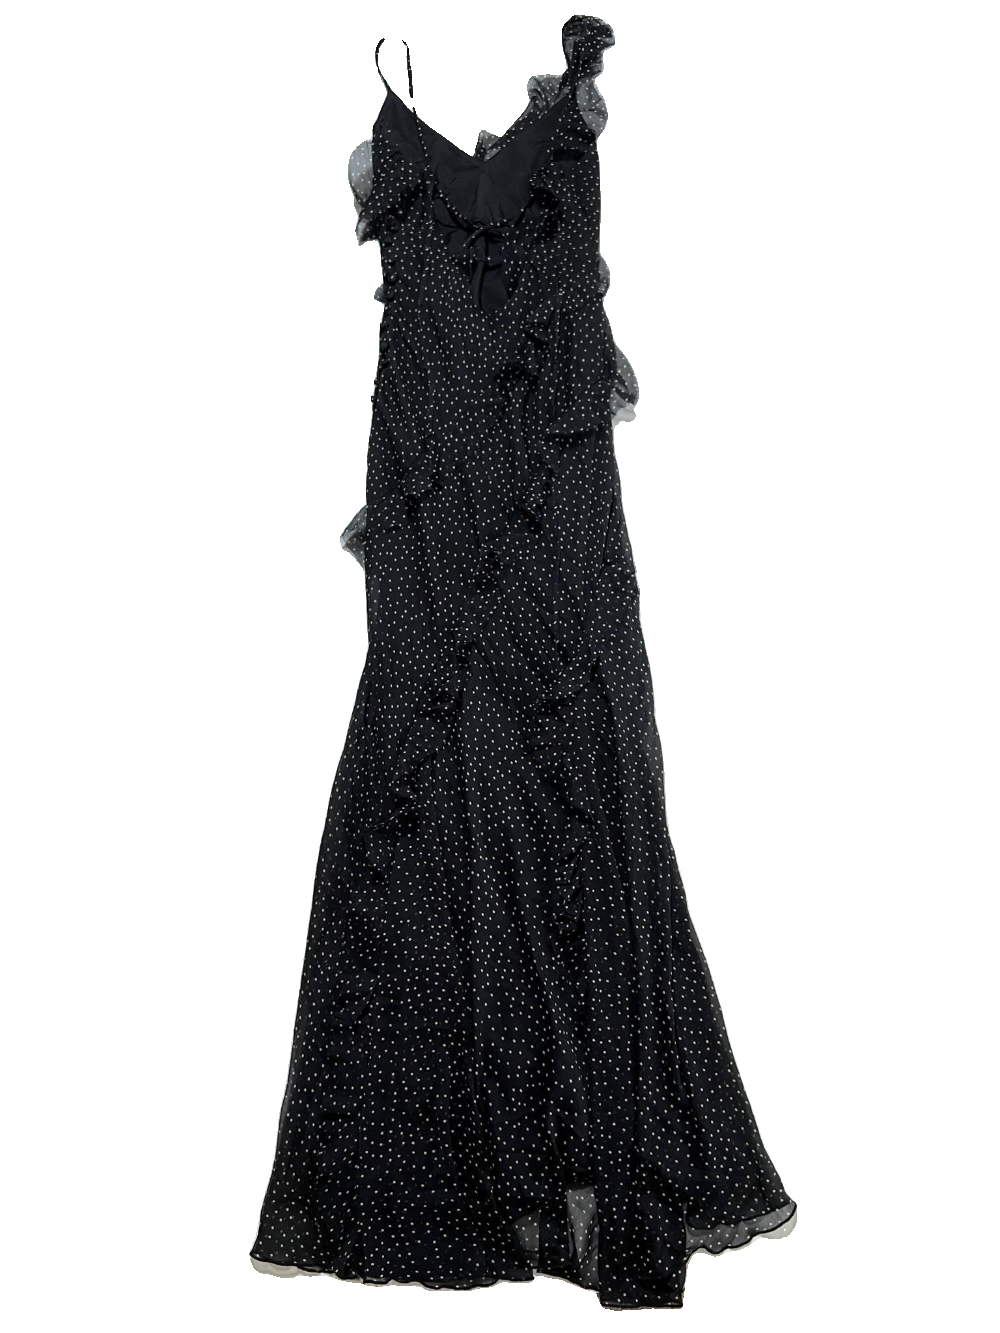 Asos- Black and Tan Polka Dot Ruffle Maxi Dress